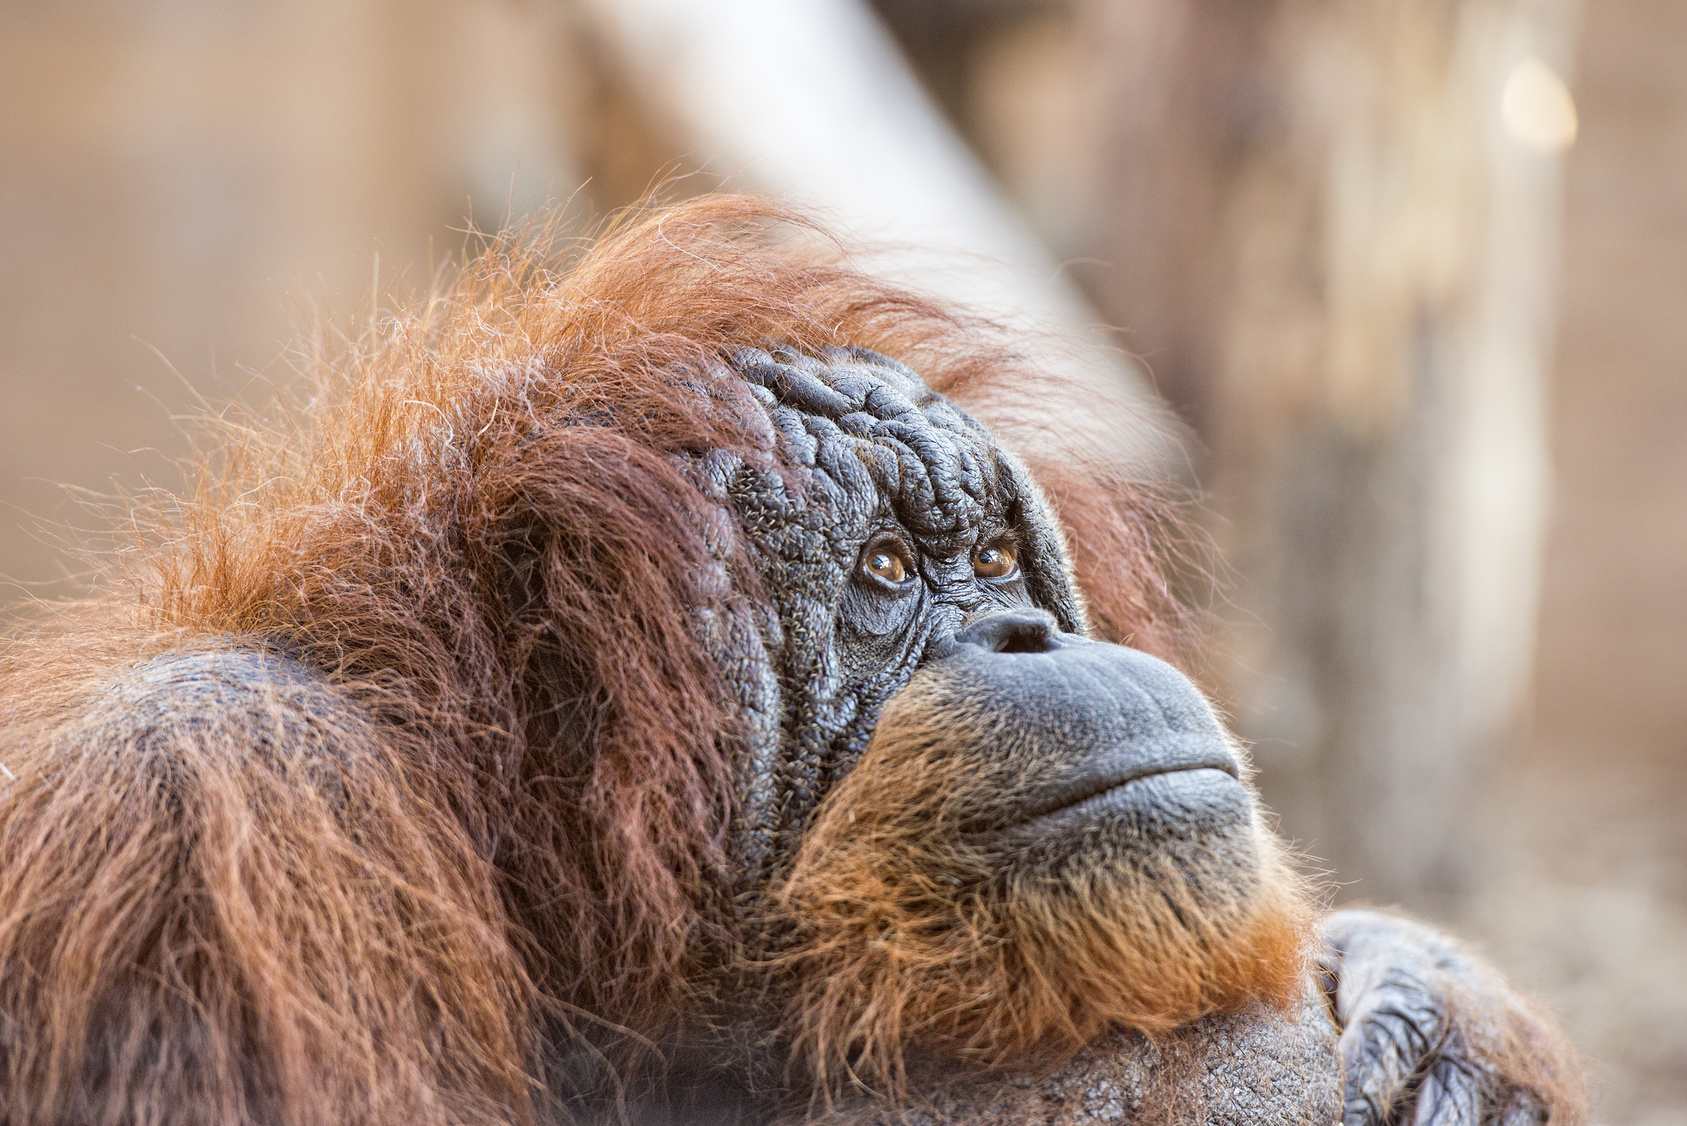 orangutan monkey close up portrait